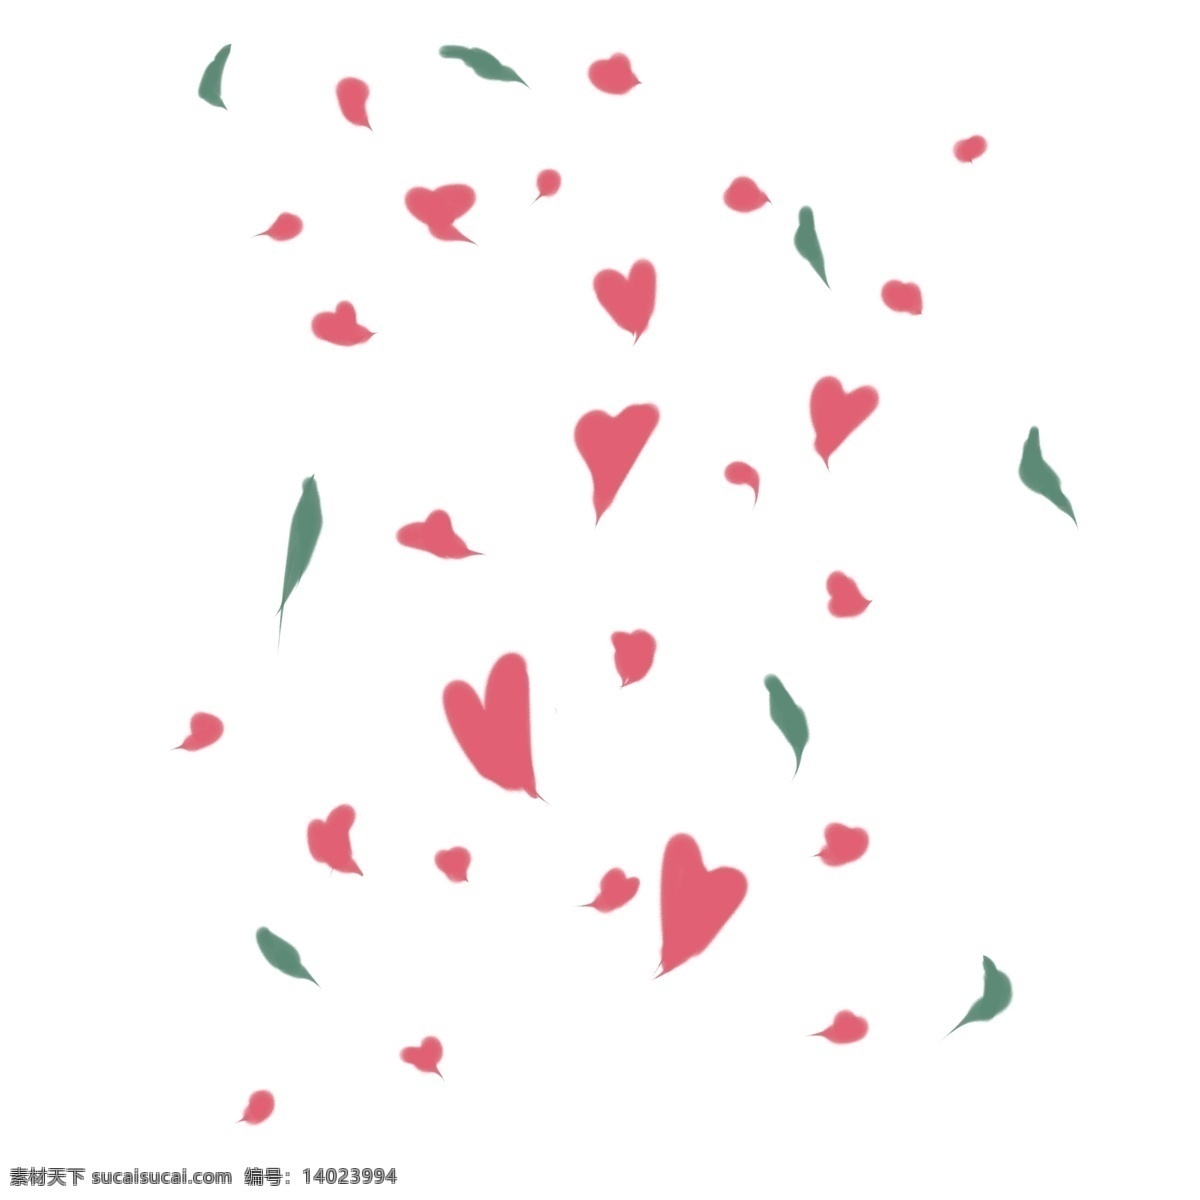 爱心 花瓣 手绘 插画 爱心花瓣 漂浮的花瓣 可爱的花瓣 浪漫的花瓣 创意花瓣 花瓣装饰 花瓣插画